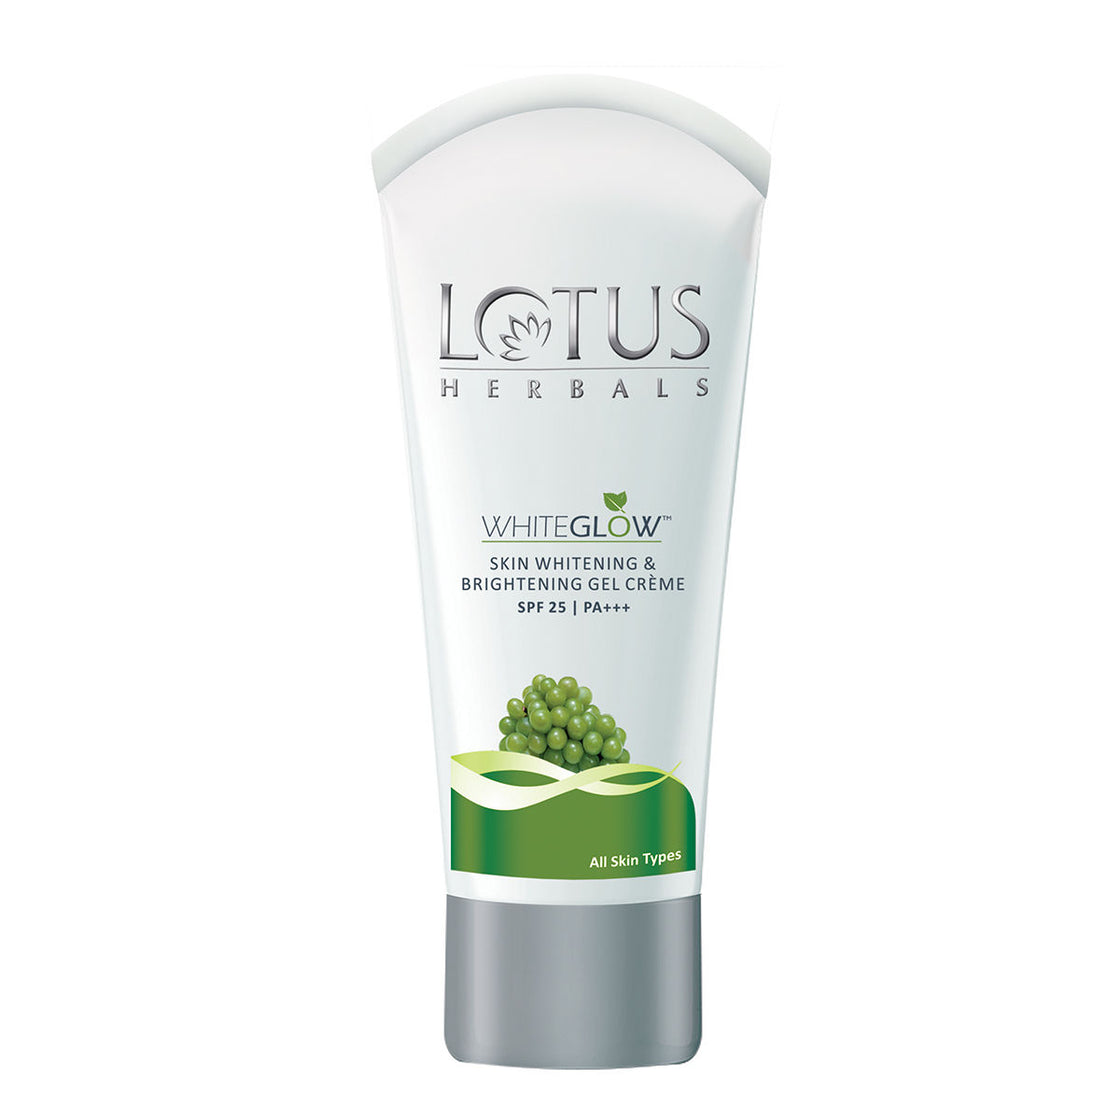 Lotus Herbals Whiteglow Skin Whitening & Brightening Gel Creme Spf-25 I Pa+++ (15gm)